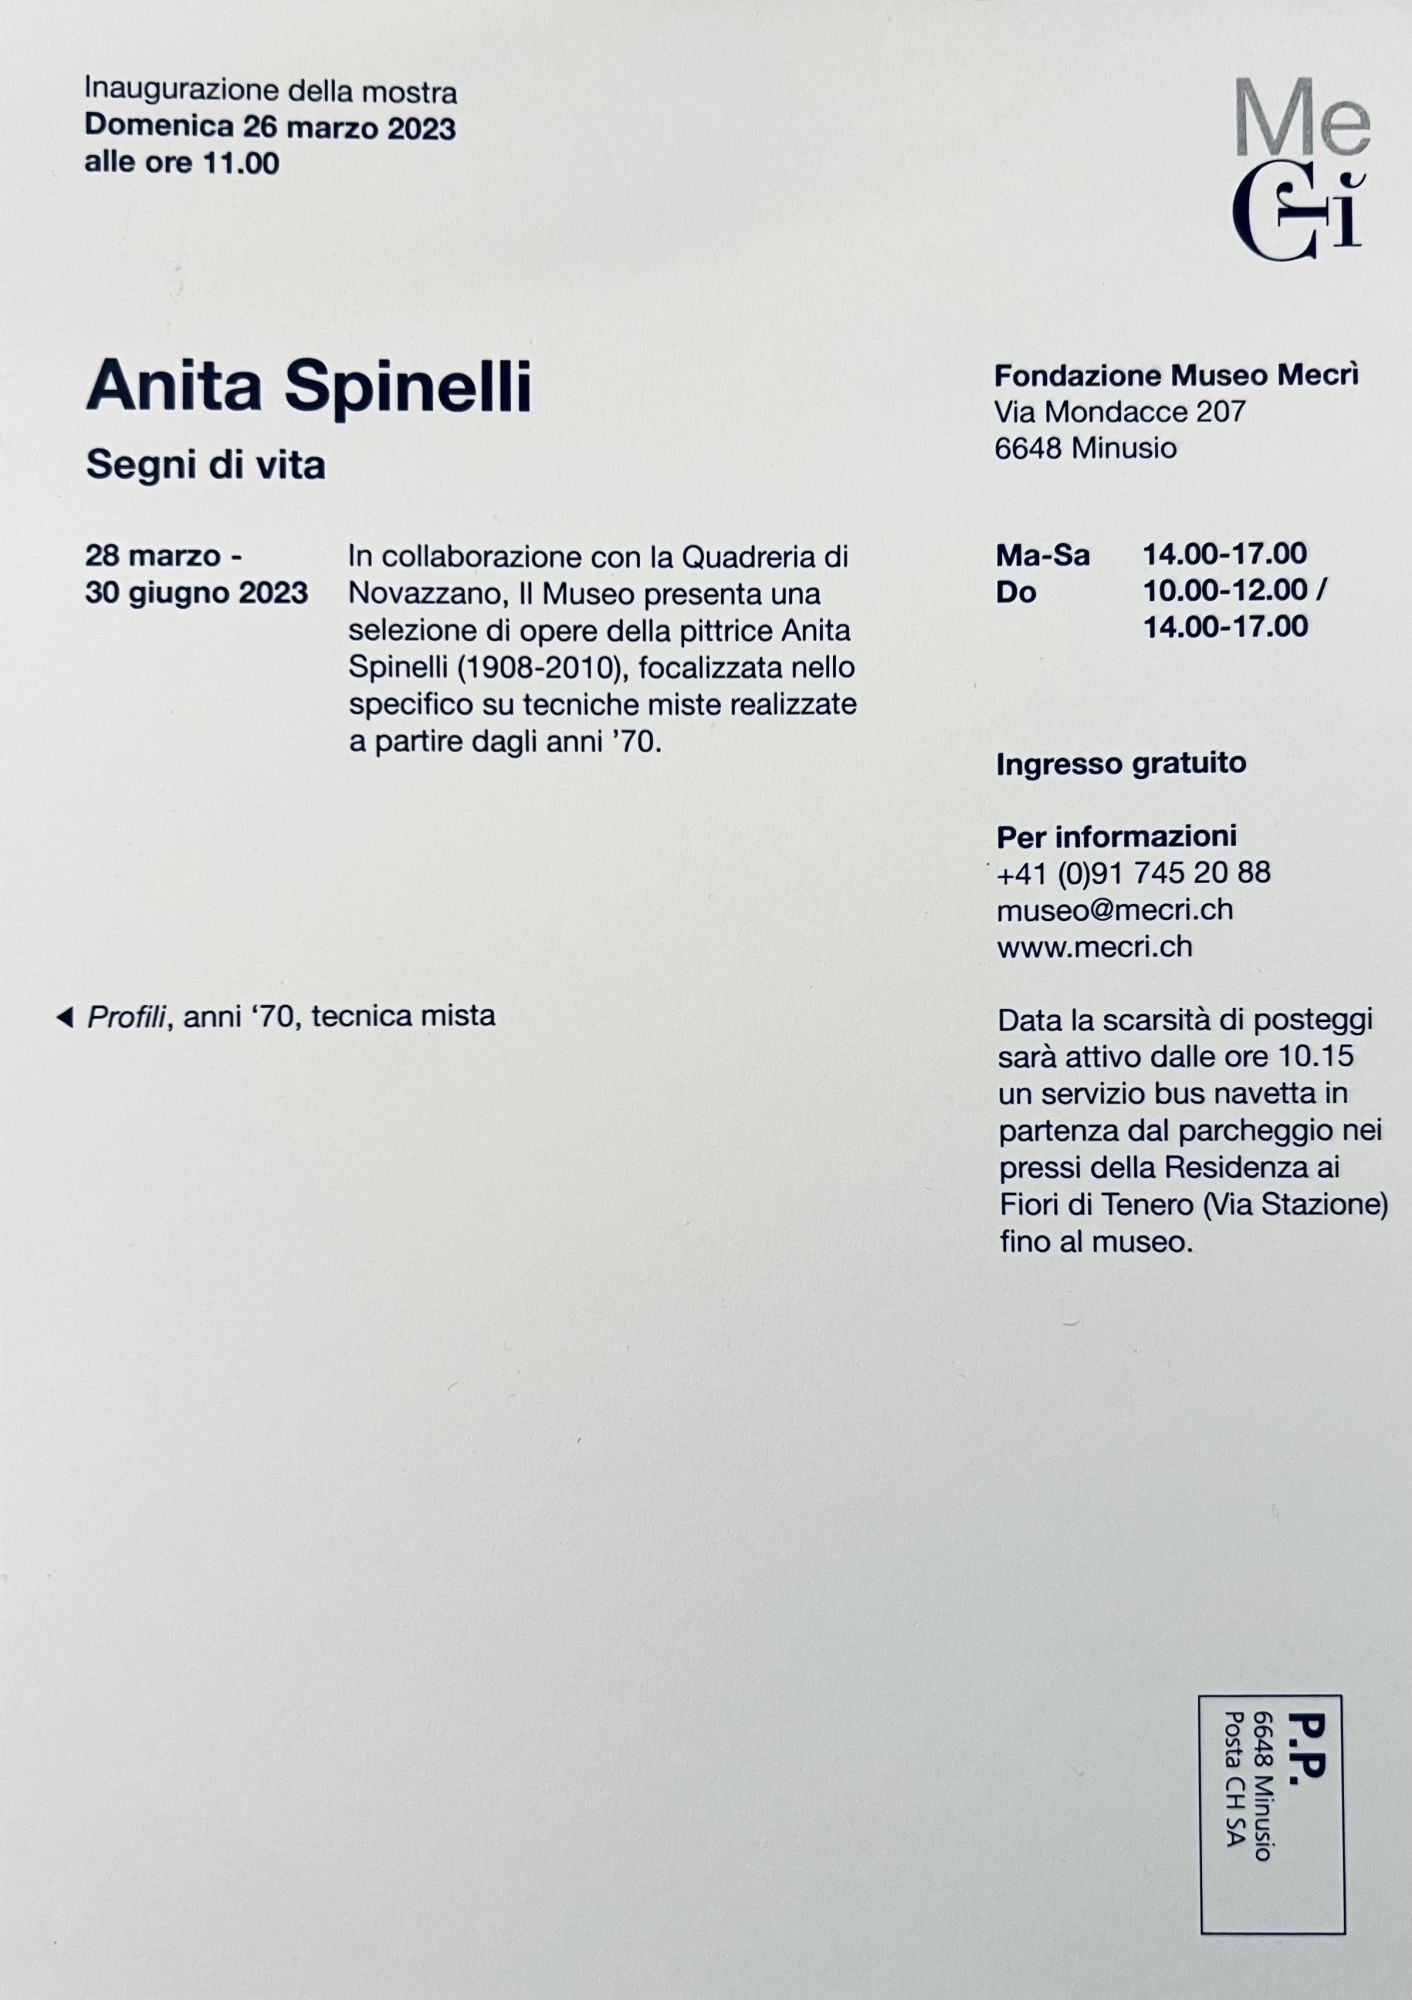 Mostra di Anita Spinelli "Segni di vita" al museo MeCrì a Minusio Mondacce dal 28 marzo al 30 giugno 2023